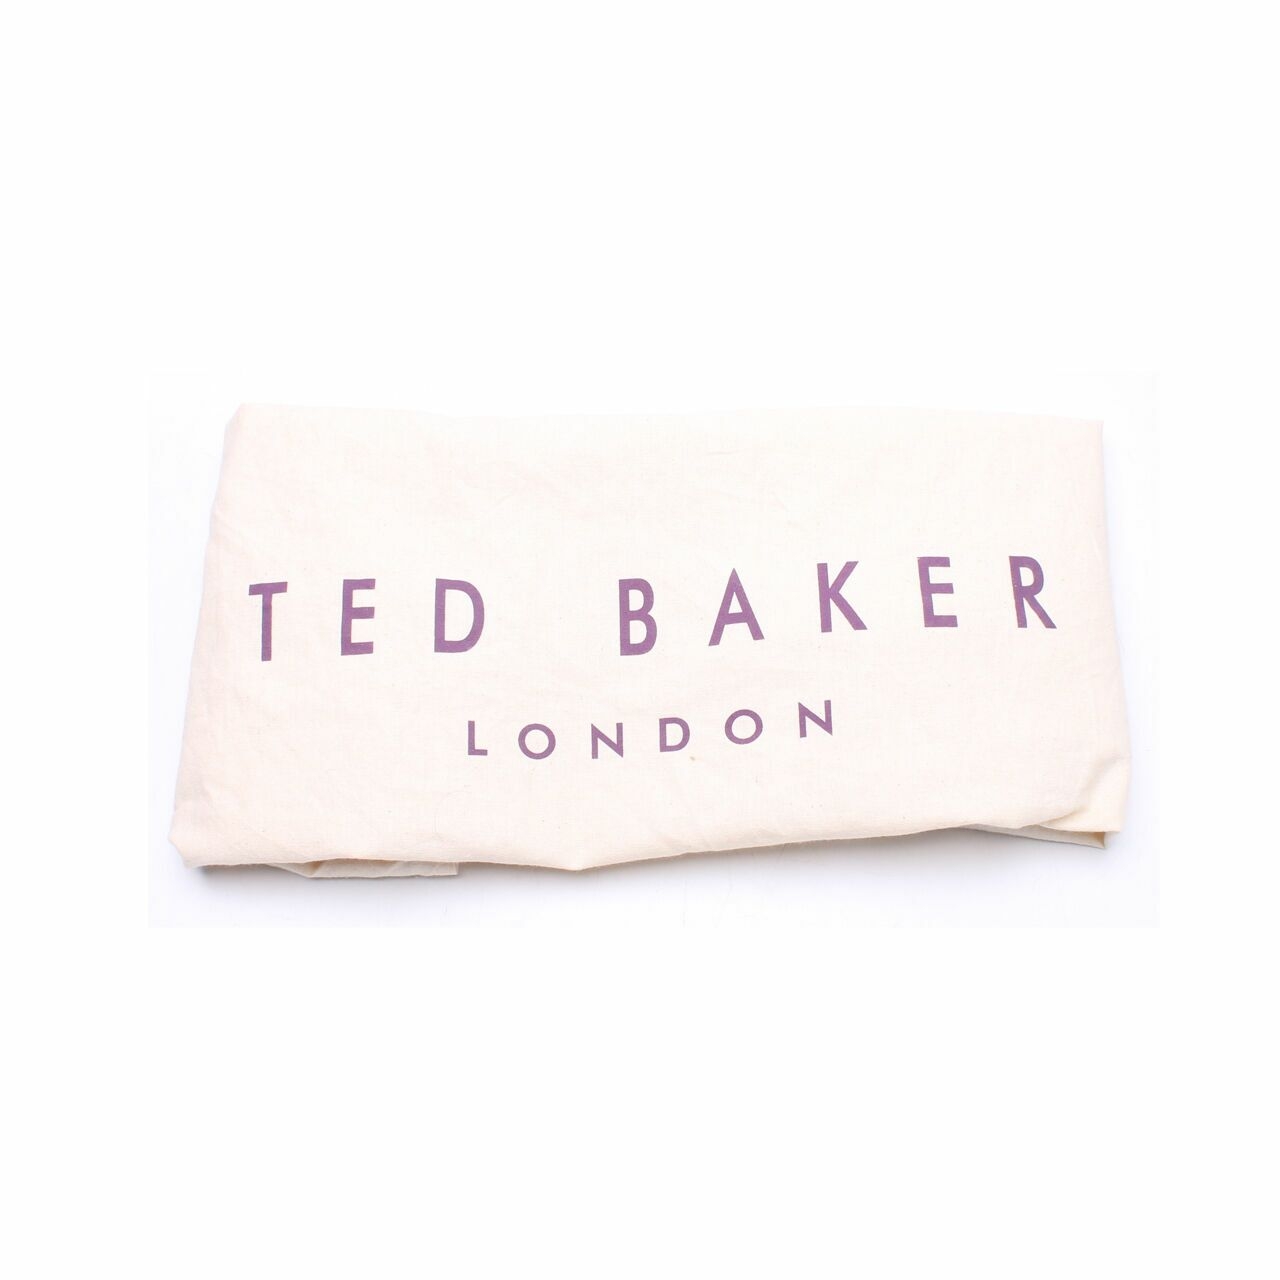 Ted Baker Otillia Top Handle Pink Satchel Bag